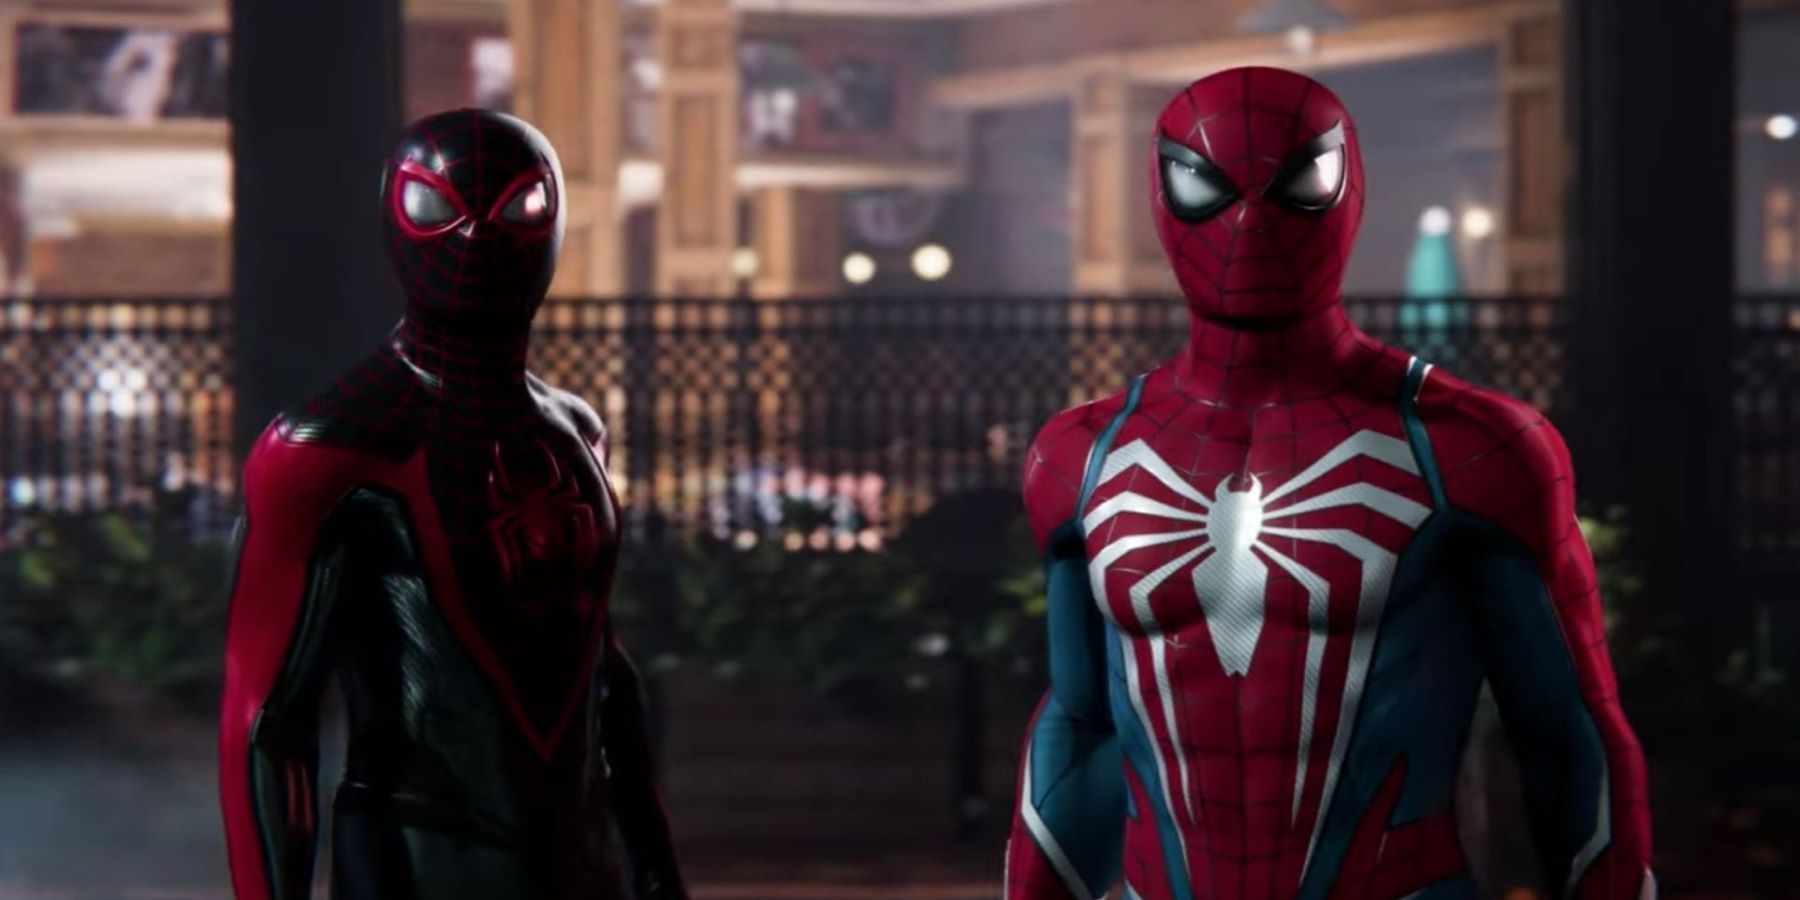 Marvel’s Spider-Man 2-fans ønsker at se en ‘Udviklende’ symbiotedragt